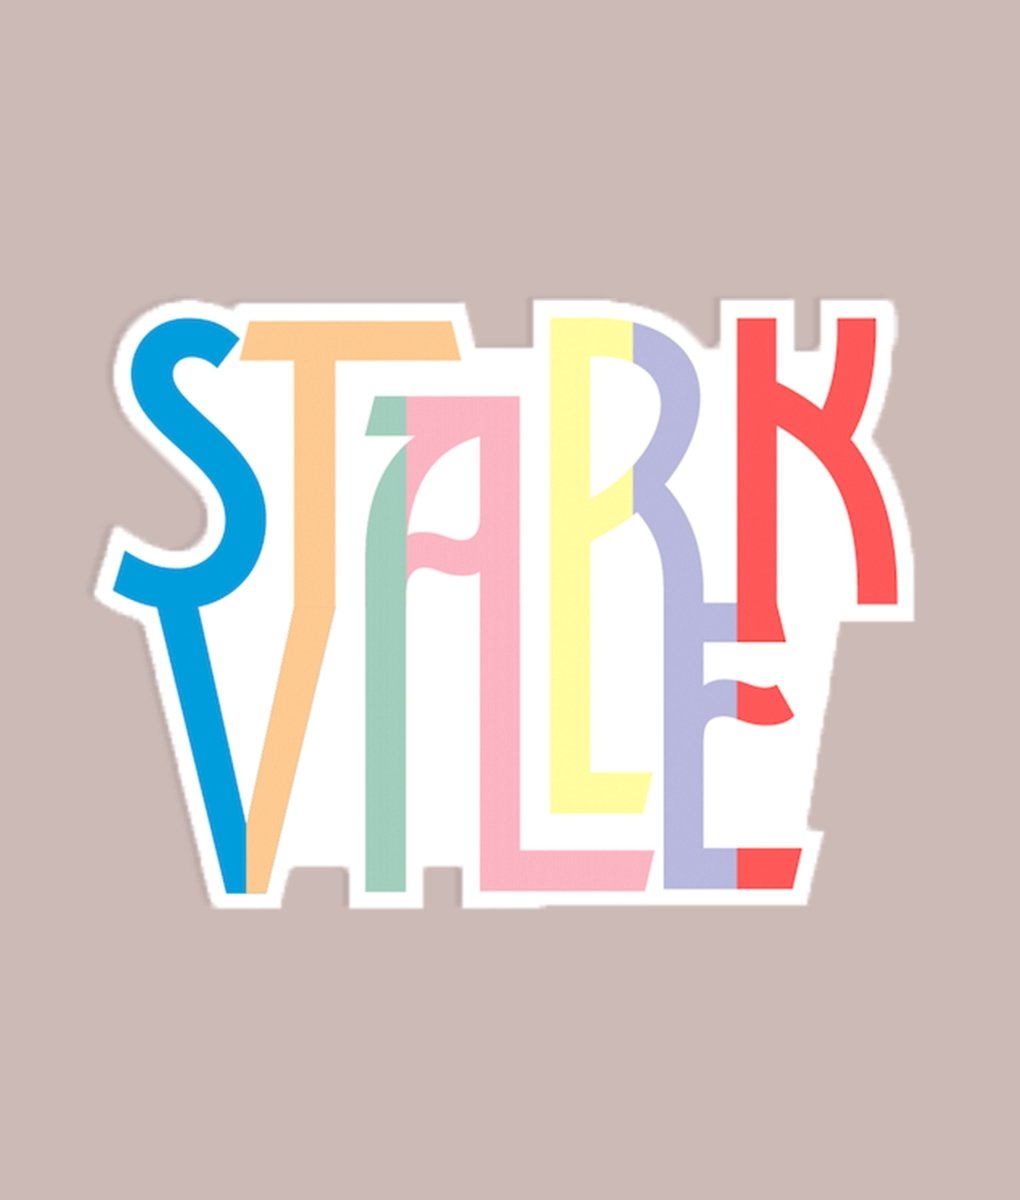 Starkville Die Cut Stickers - Shop B-Unlimited